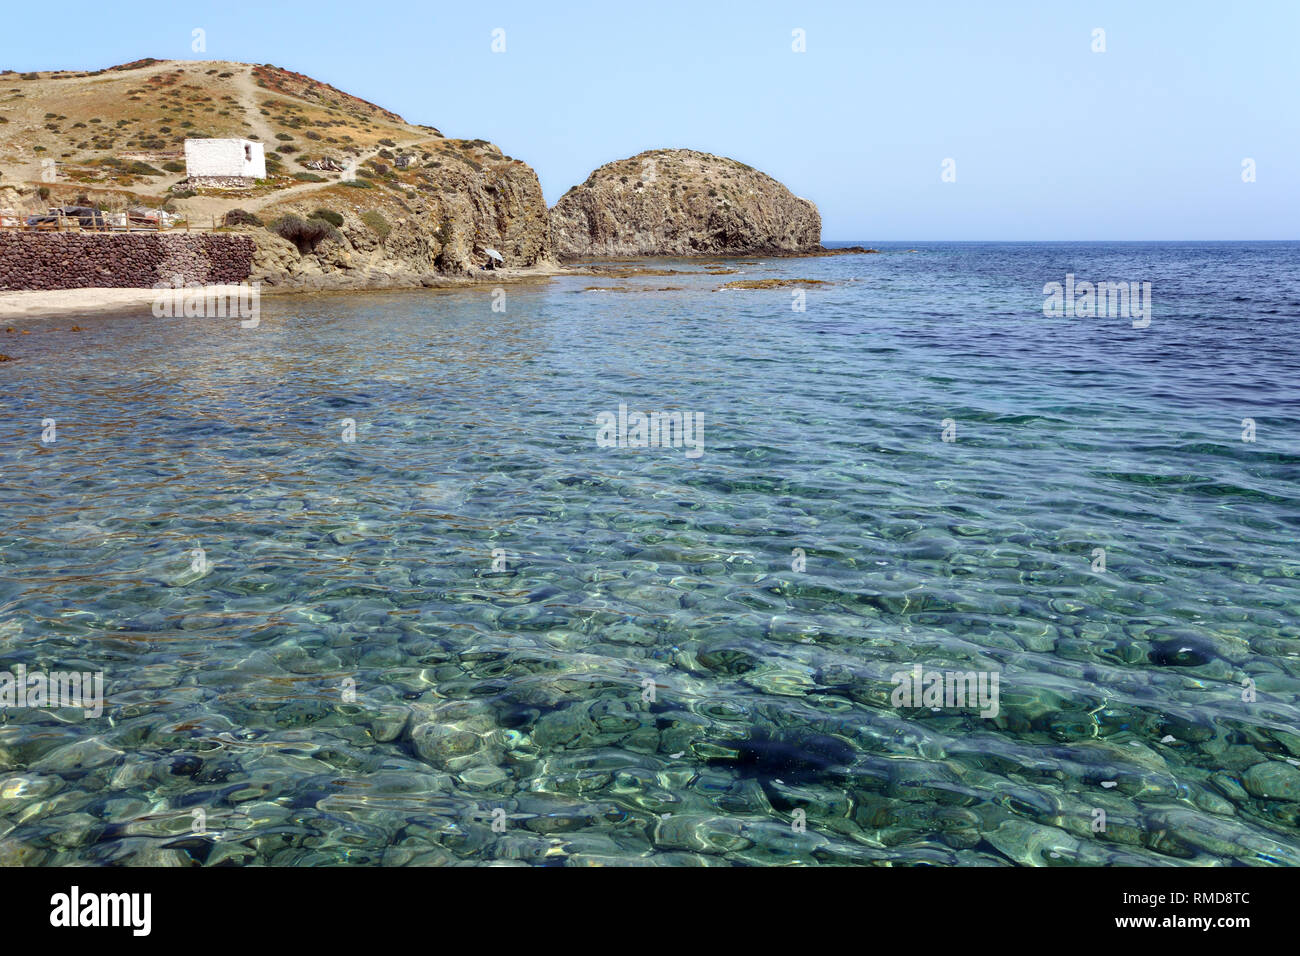 Isla del Moro è piccola isola/promontorio al Parco Naturale Cabo de Gata (Spagna) vicino al piccolo villaggio di pescatori di Isleta del Moro. Foto Stock